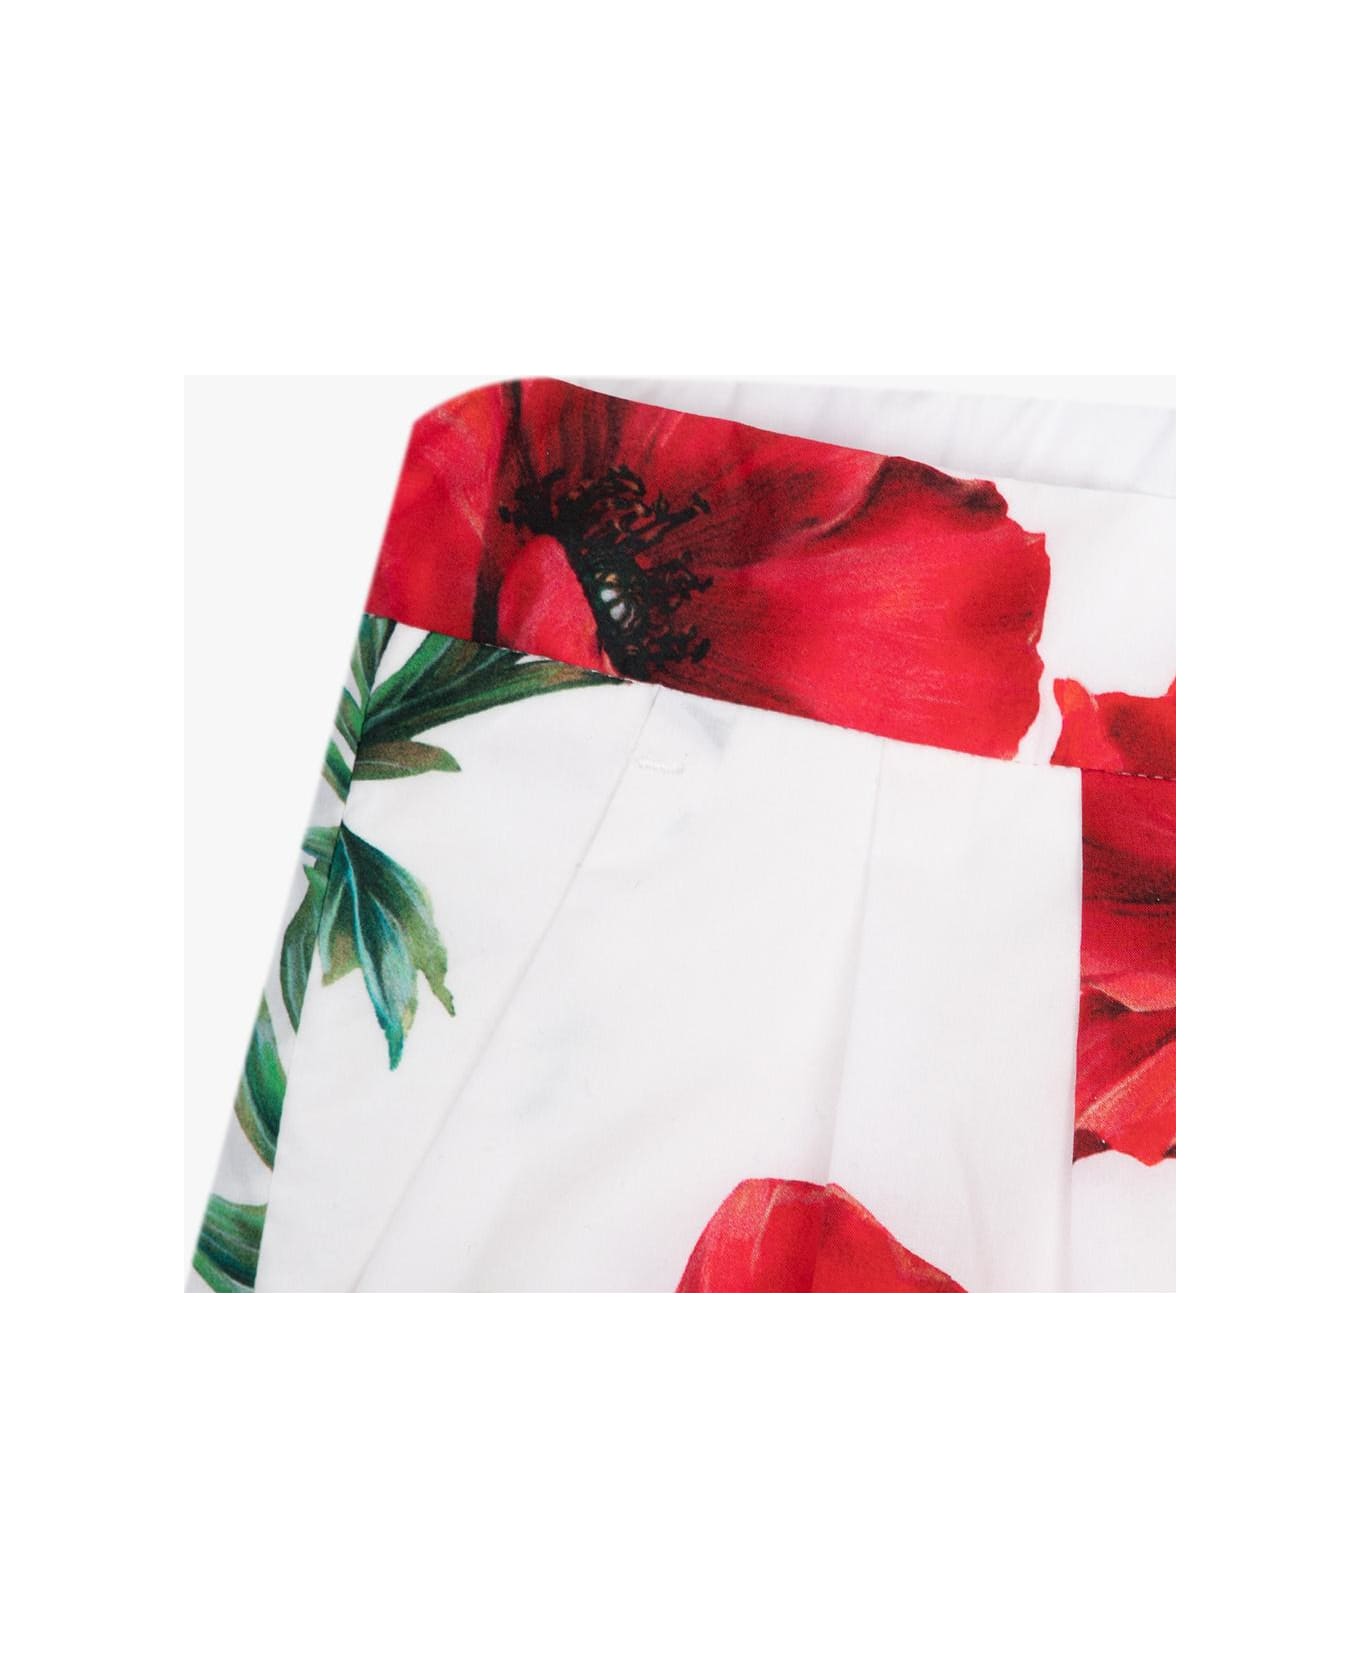 Dolce & Gabbana Kids Floral Shorts - Bianco